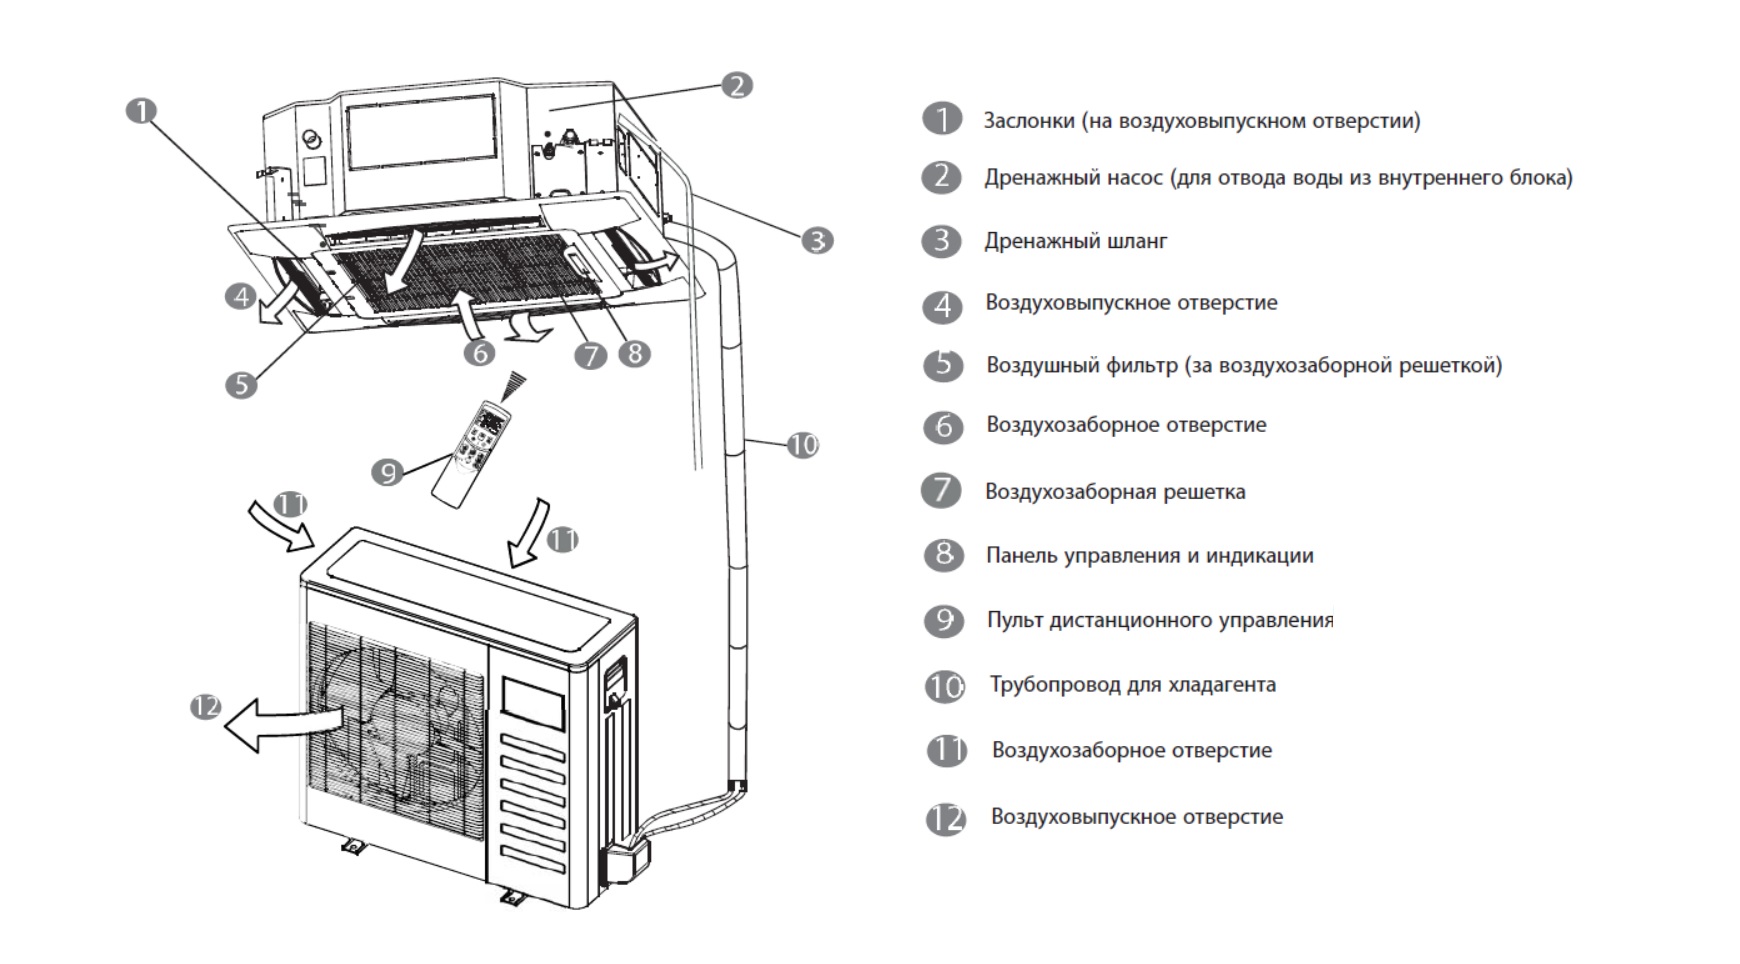 Сплит-система с внутренним блоком кассетного типа, её монтаж и обслуживание